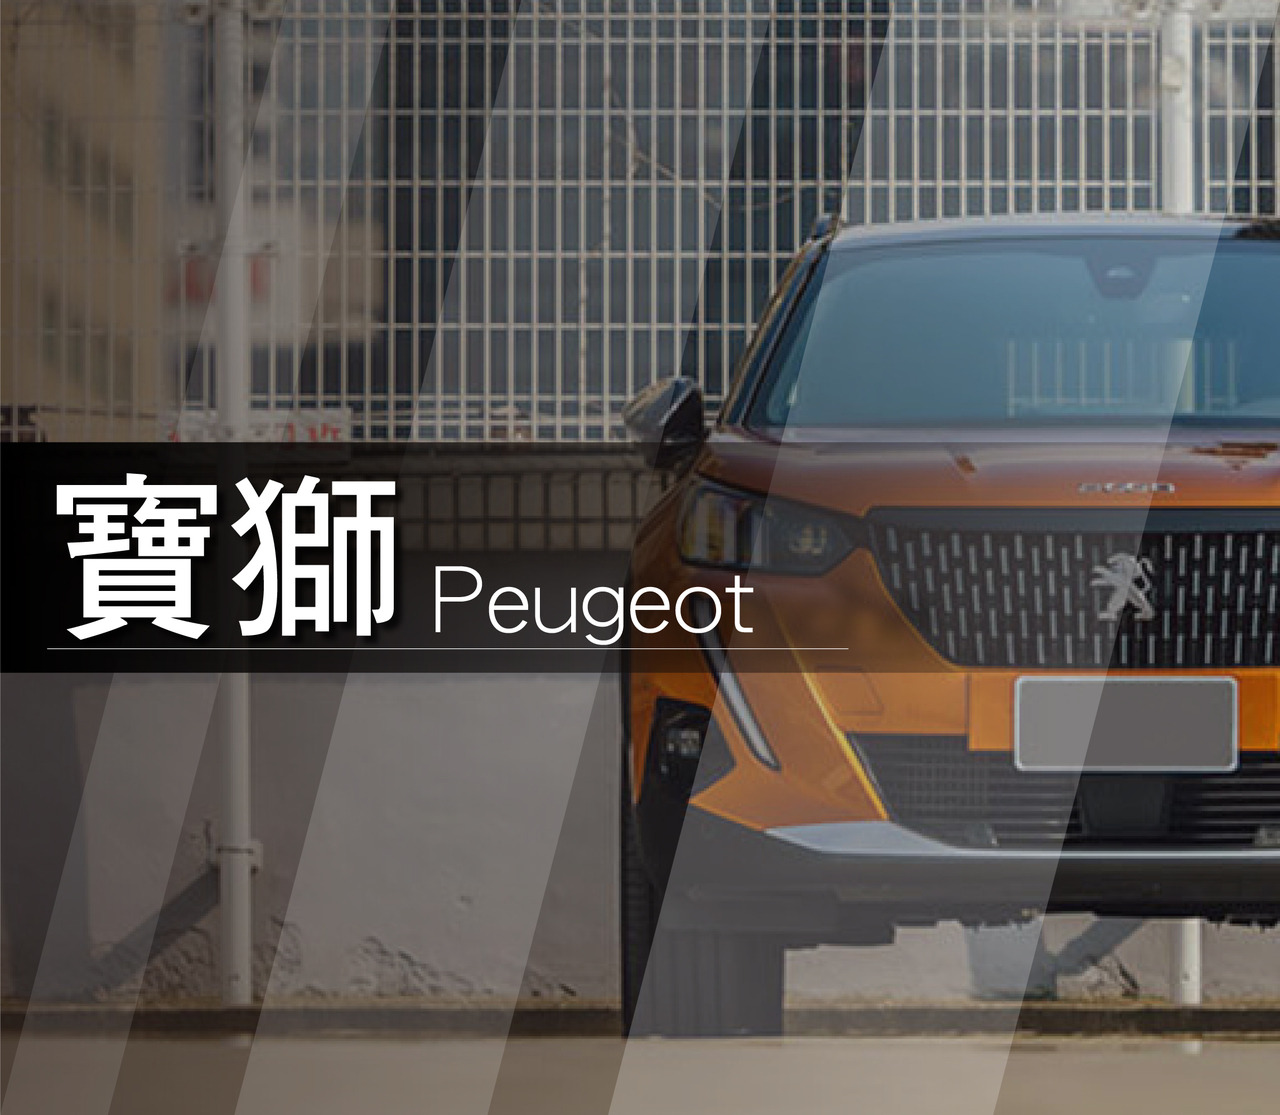 Peugeot寶獅價格 報價單